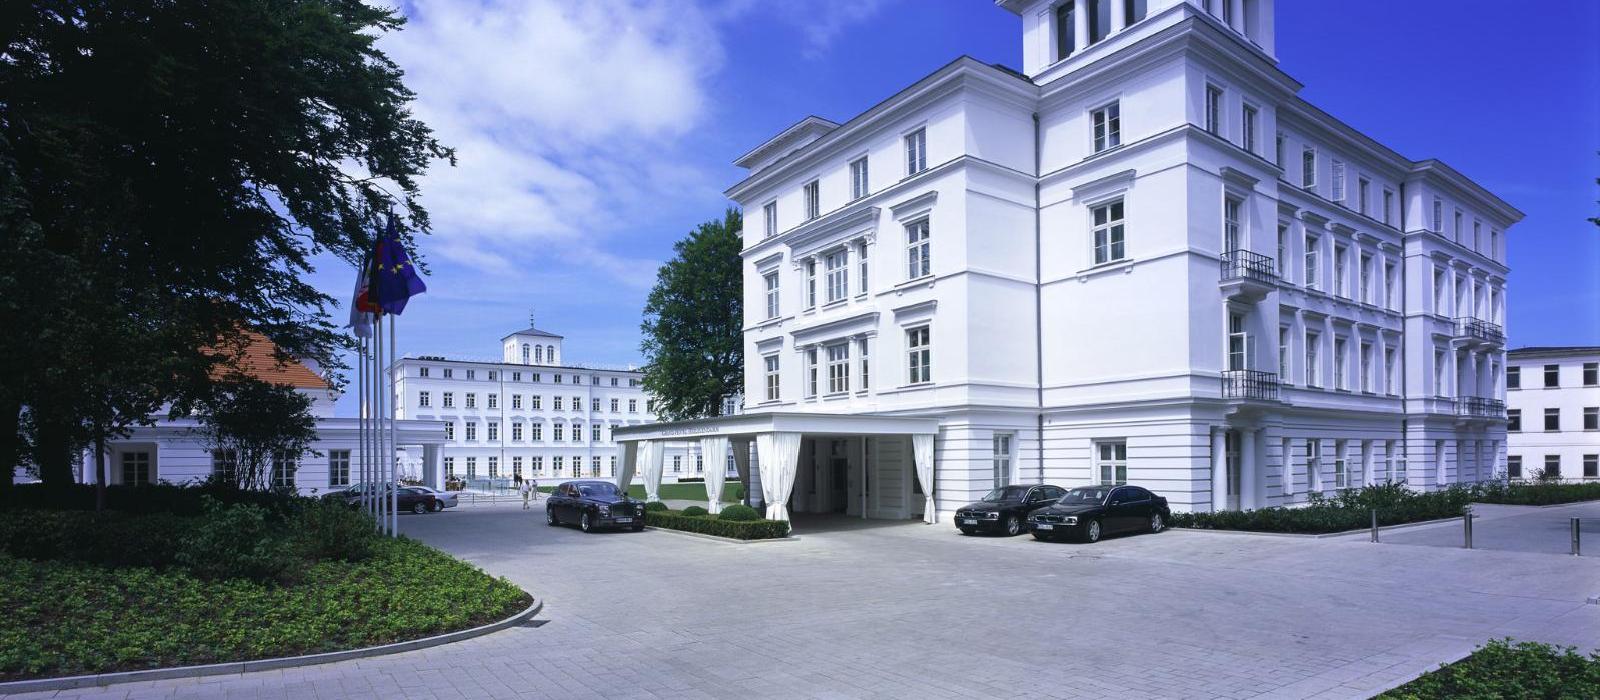 海利根达姆豪华酒店(Grand Hotel Heiligendamm) 图片  www.lhw.cn